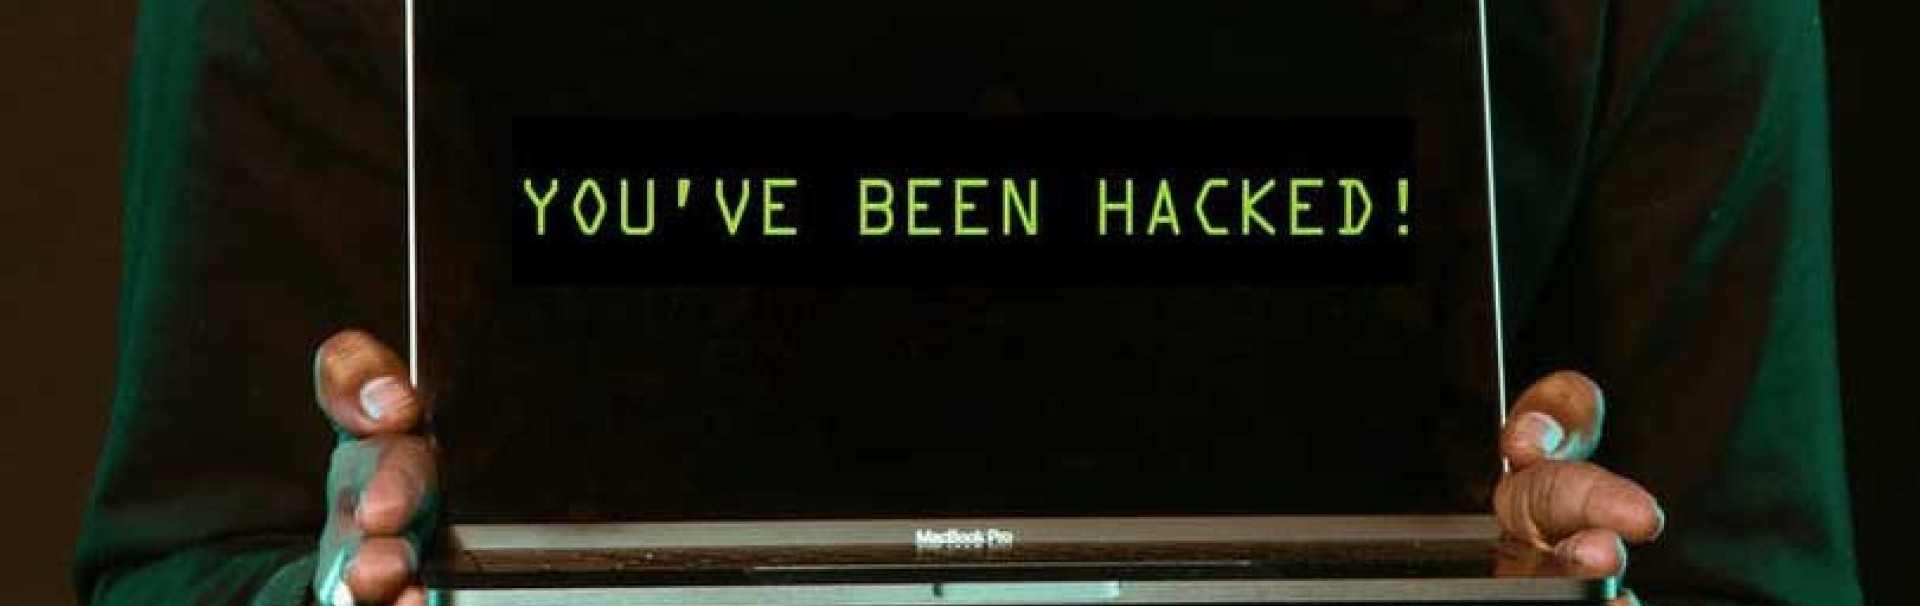 zwei Hände halten einen aufgeklappten Laptop, auf dem Bildschirm steht: You've been hacked.